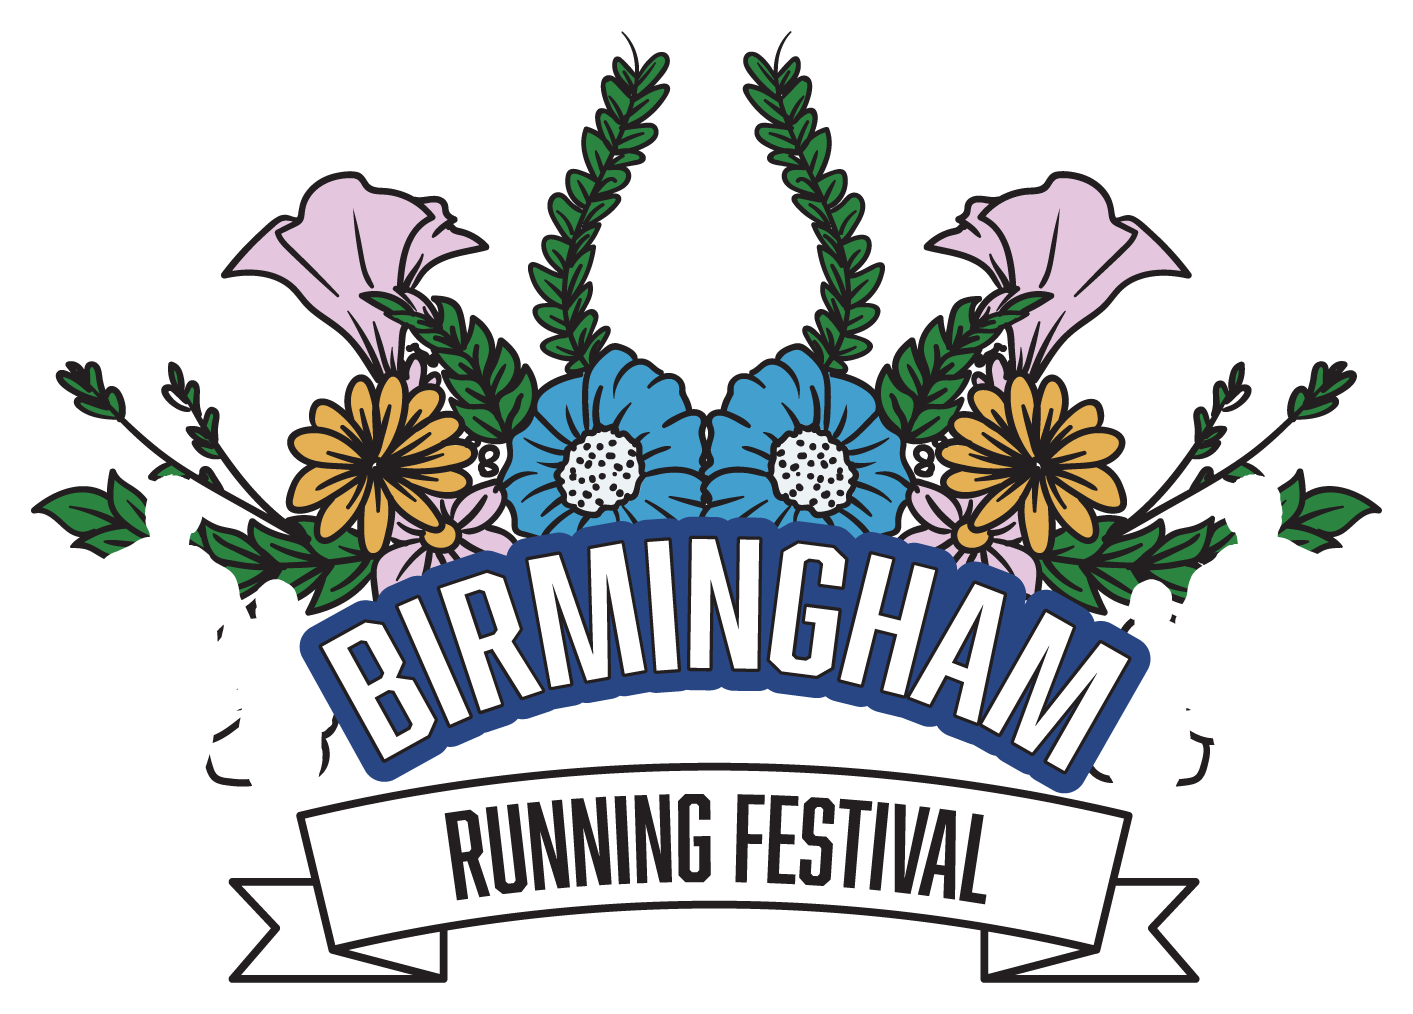 Birmingham Running Festival 5K - December